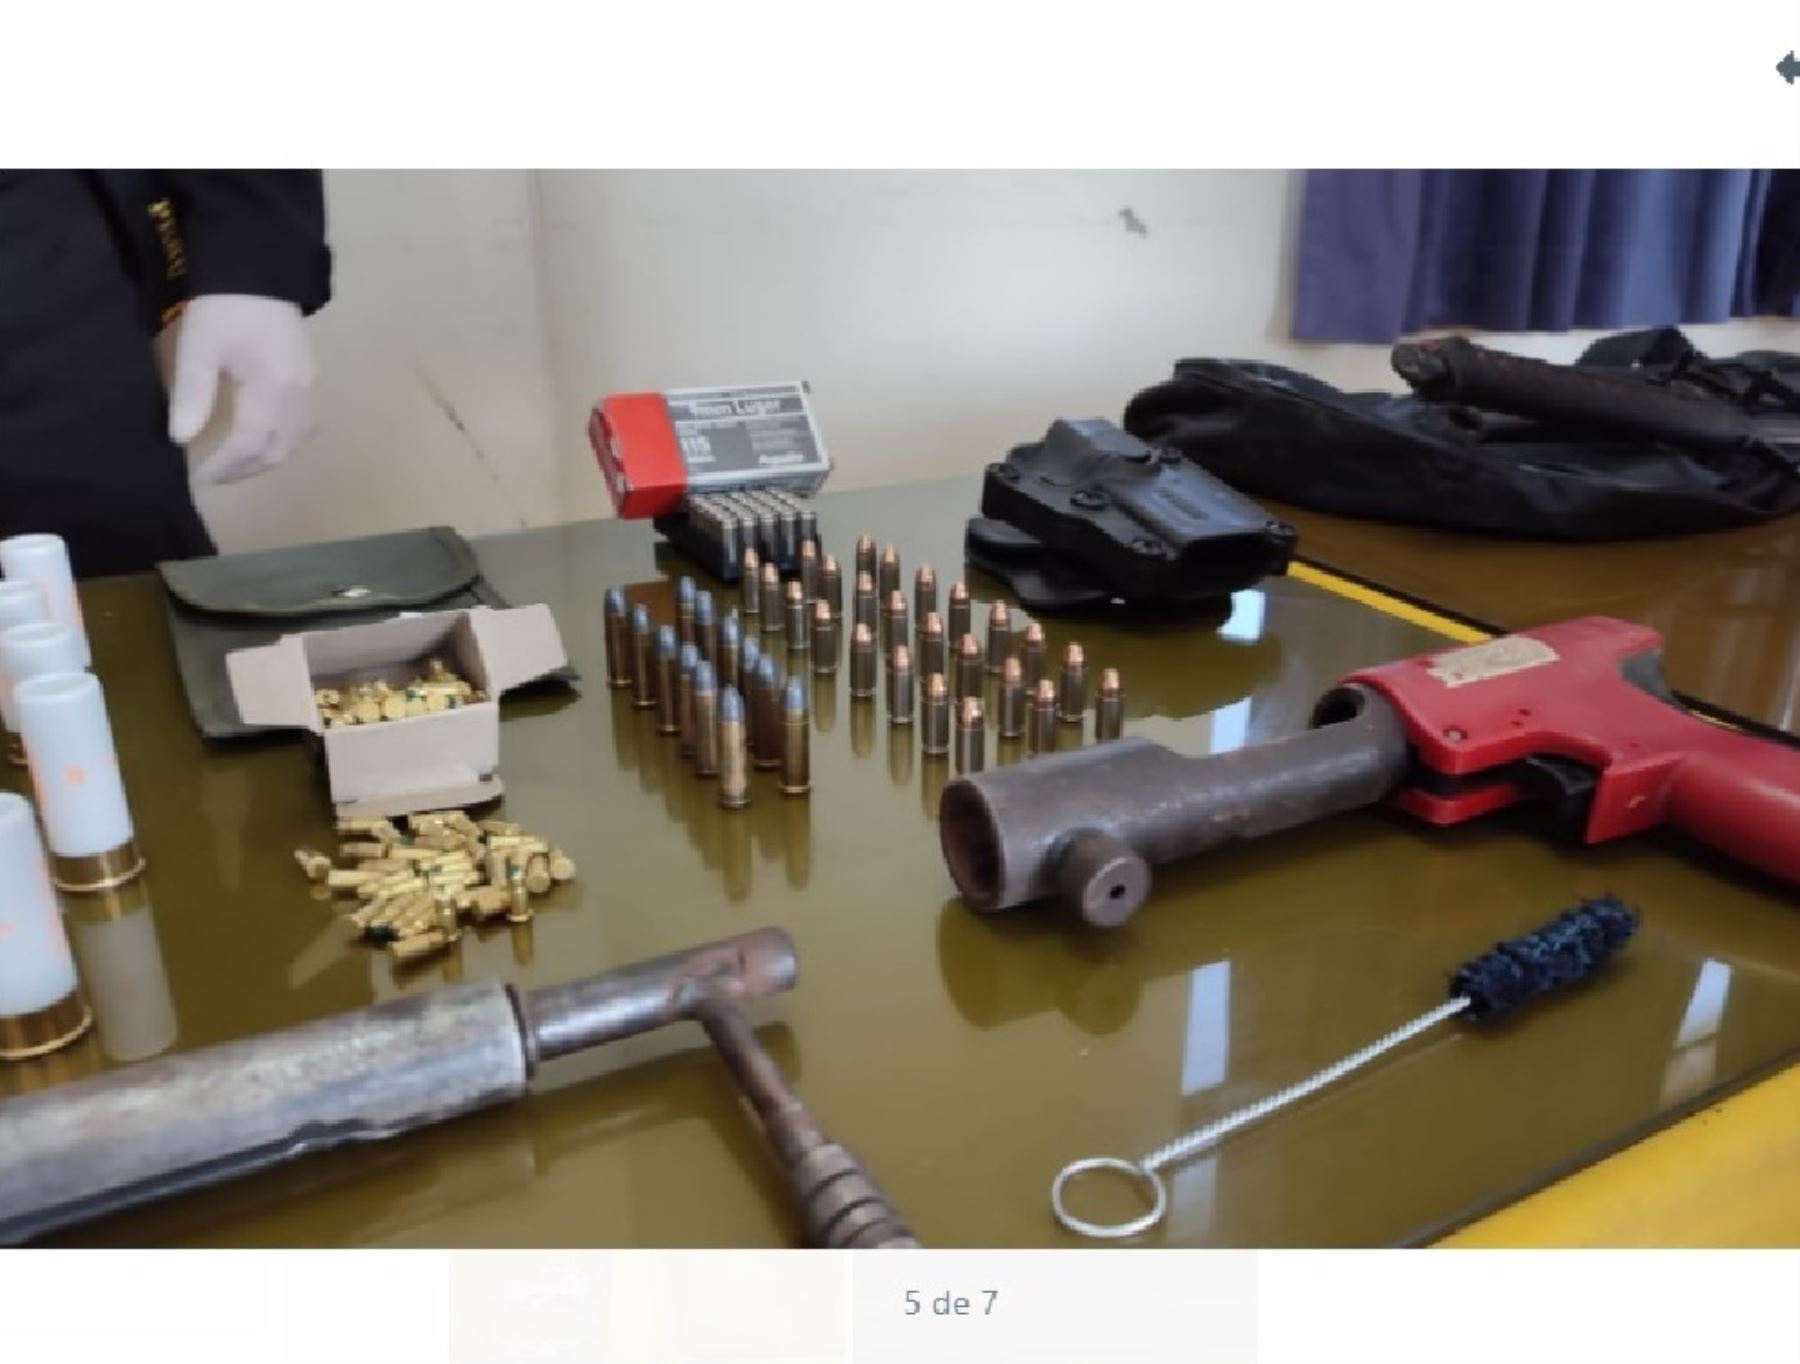 La Policía Nacional incautó armas hechizas a los presuntos integrantes de la banda criminal detenidos en Tacna.